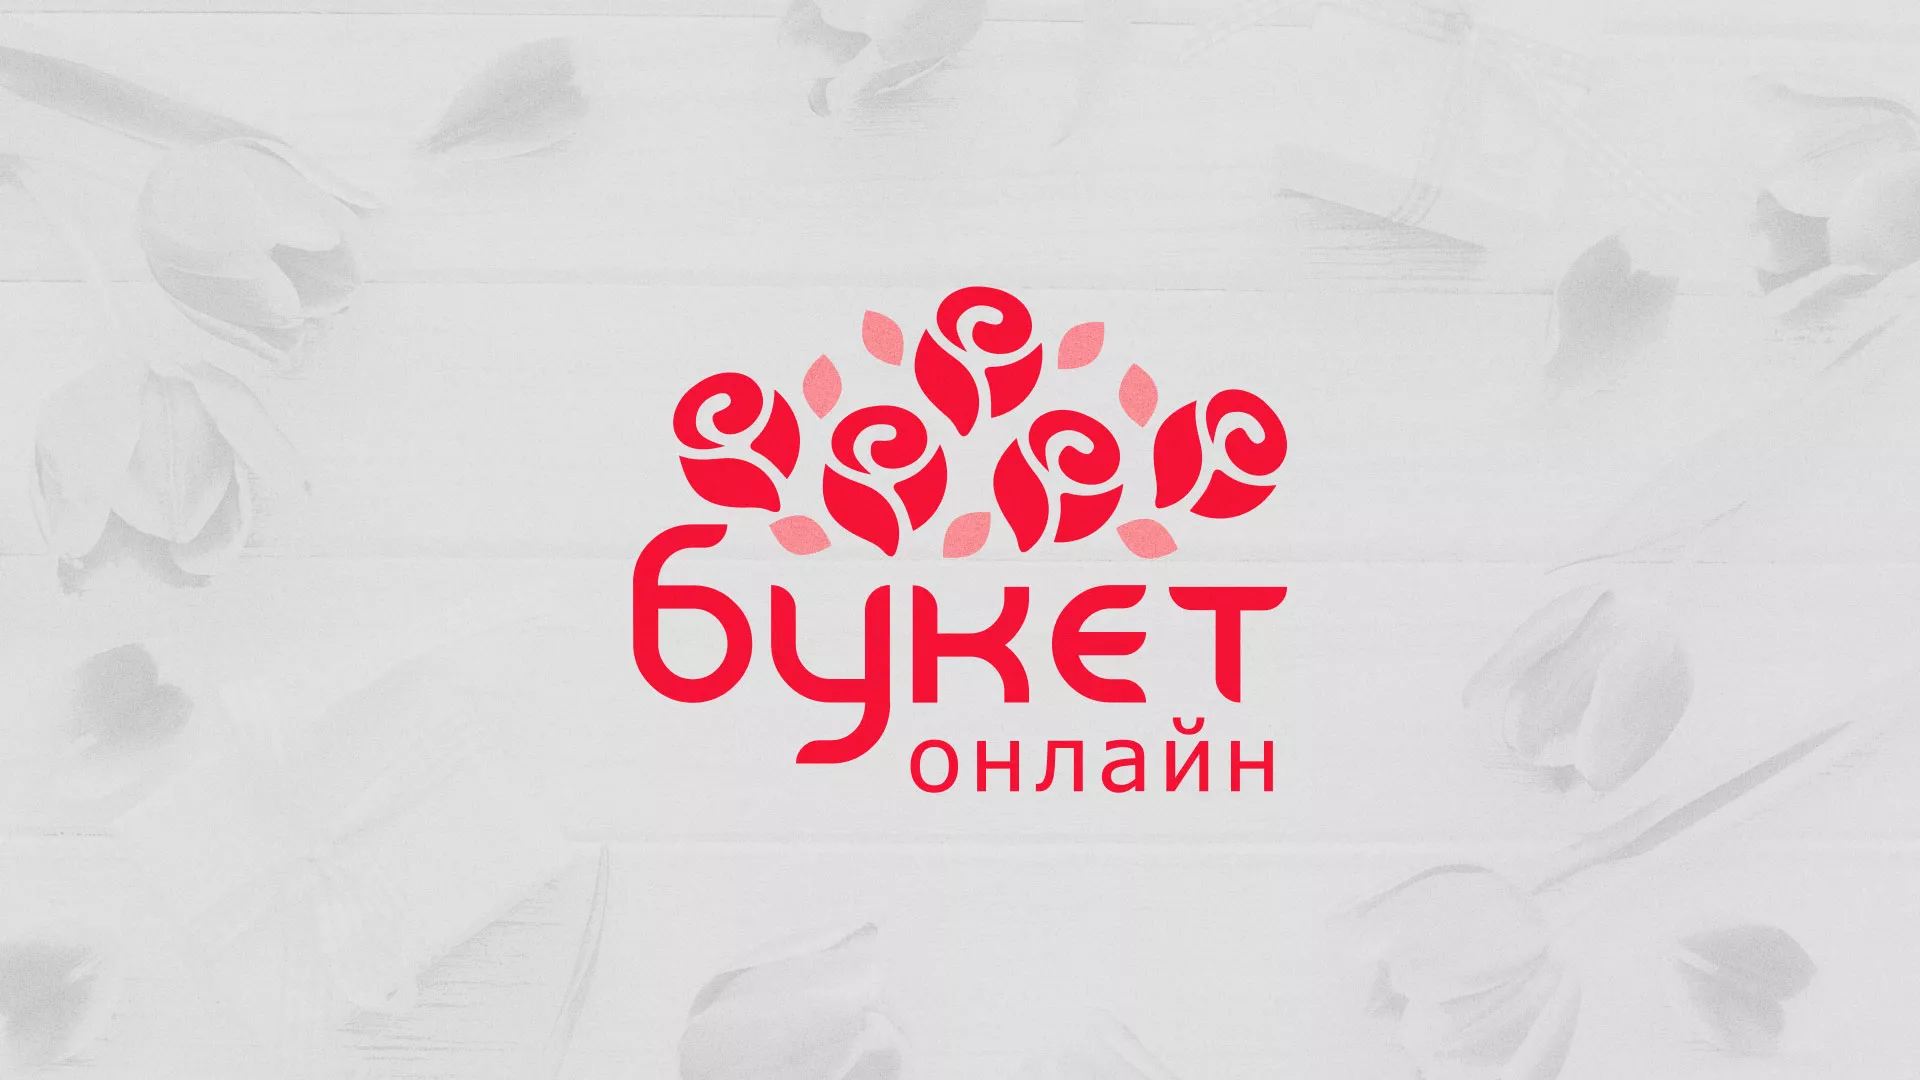 Создание интернет-магазина «Букет-онлайн» по цветам в Майском